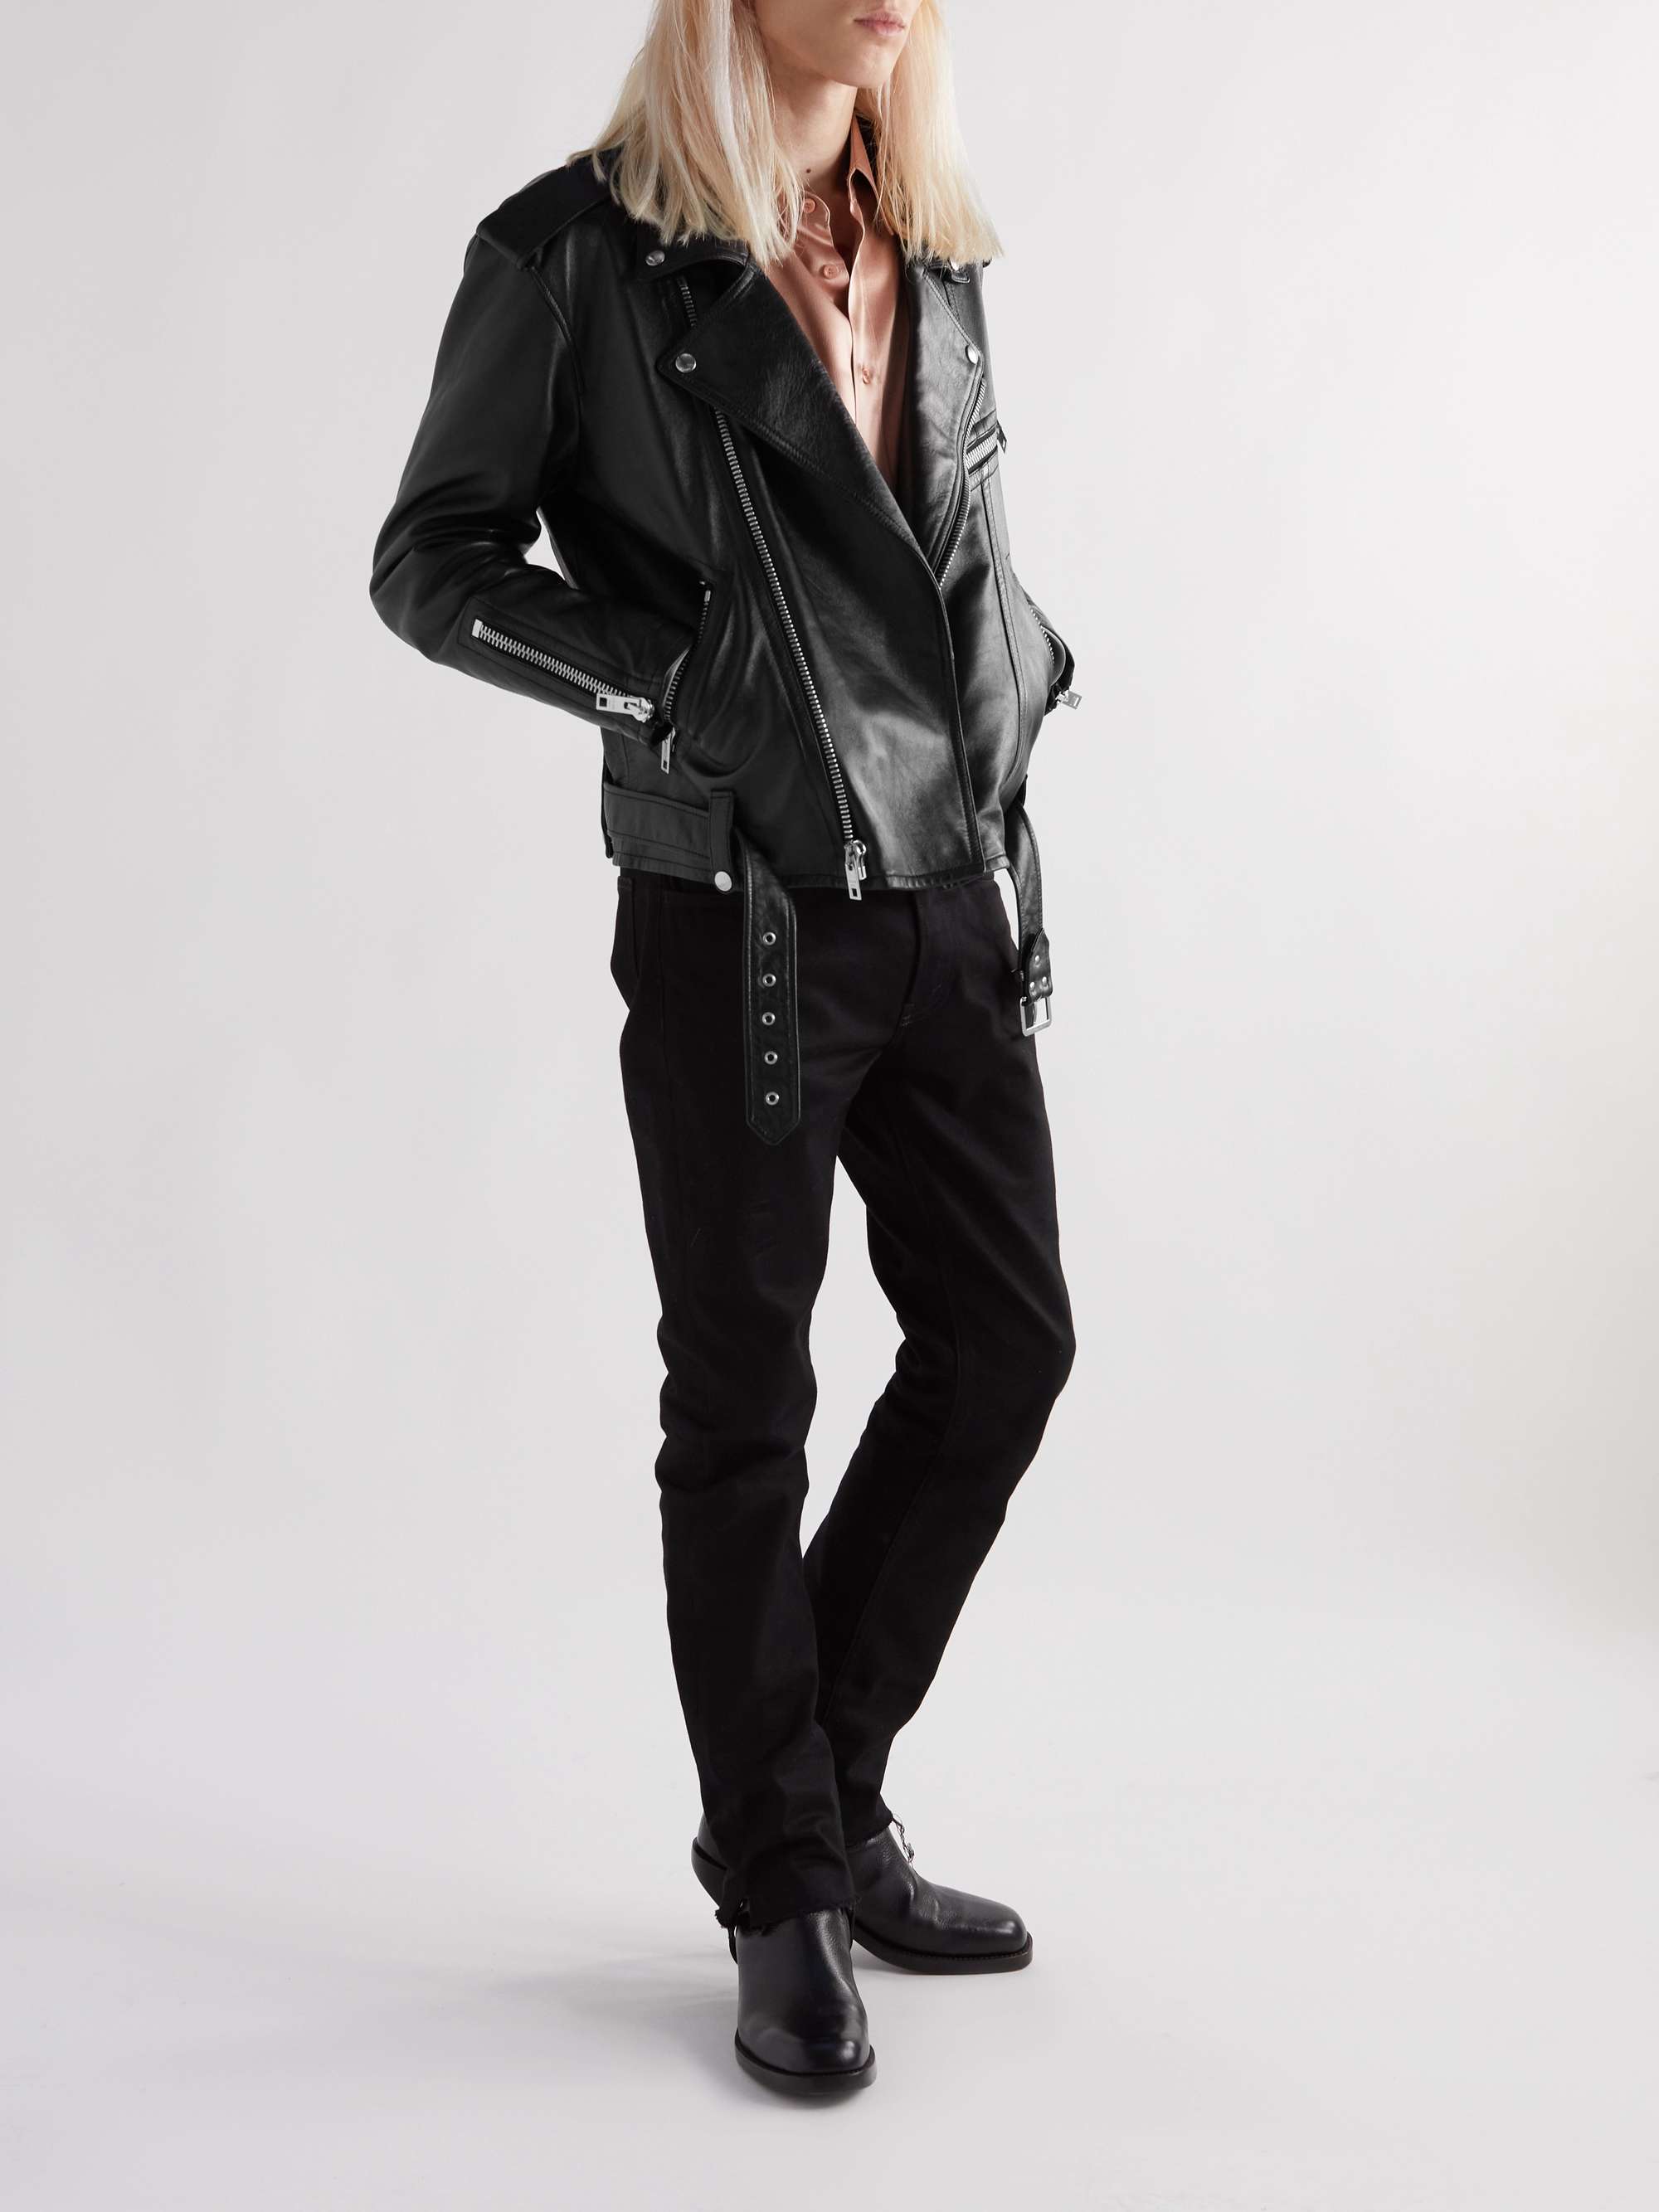 CELINE HOMME Textured-Leather Biker Jacket for Men | MR PORTER